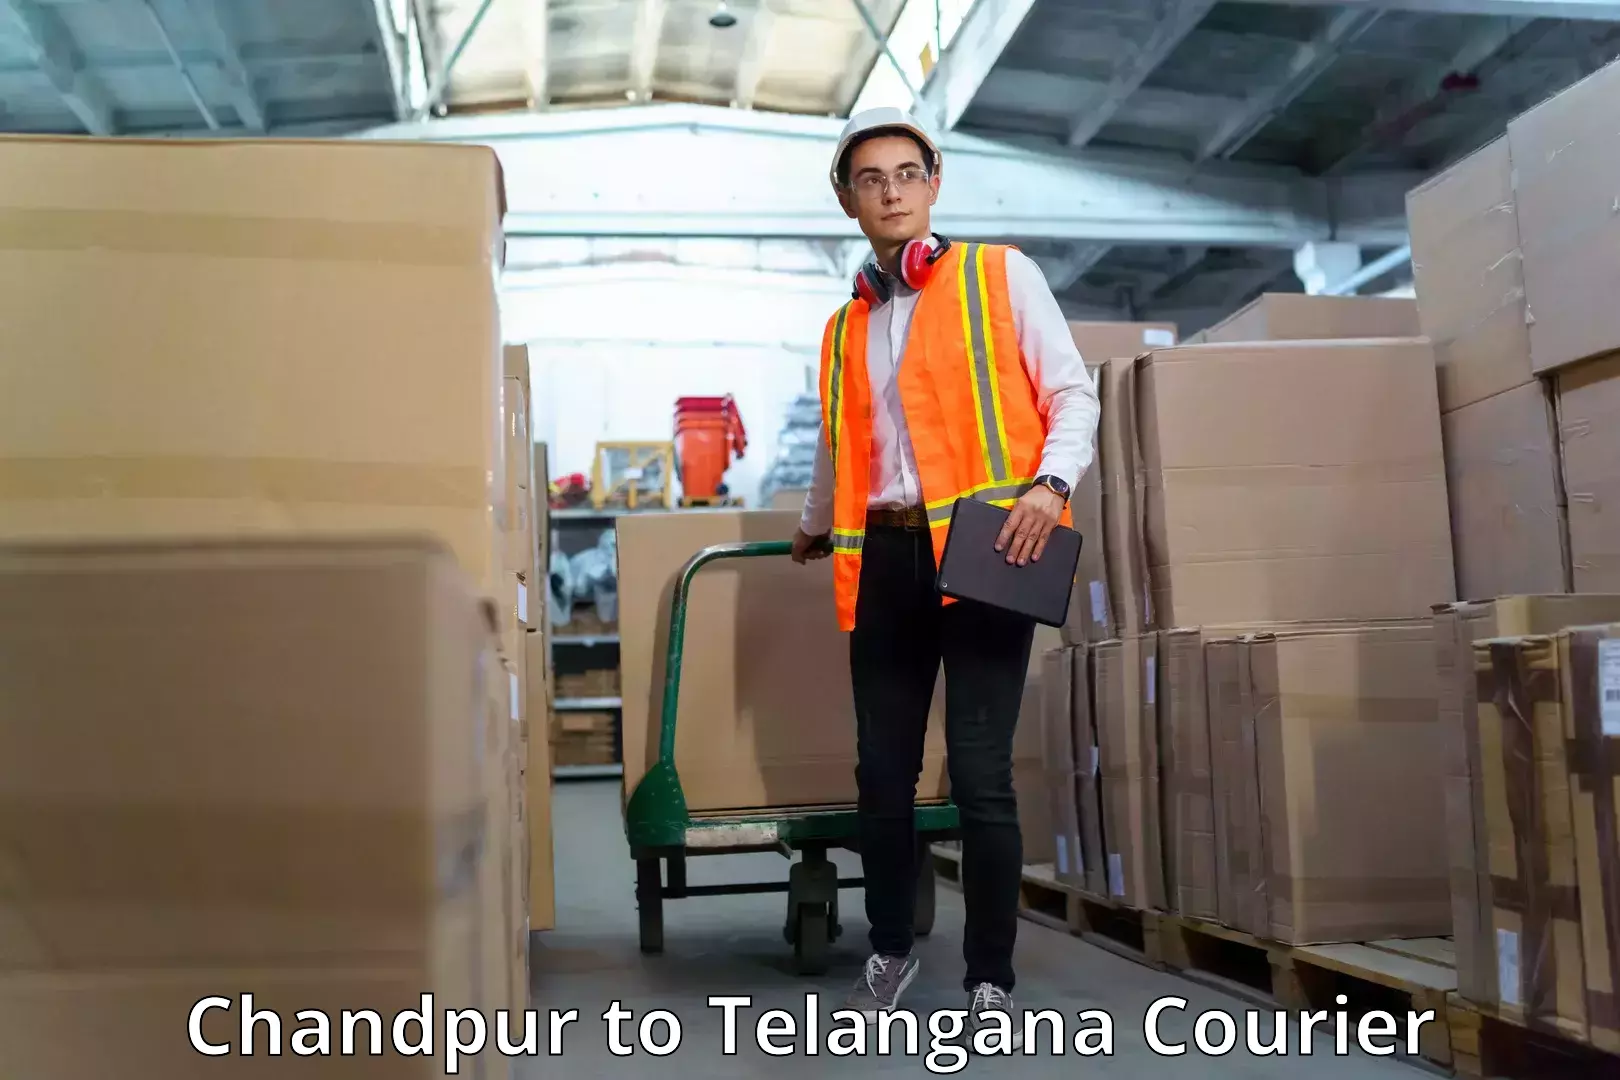 Courier service comparison Chandpur to Haliya